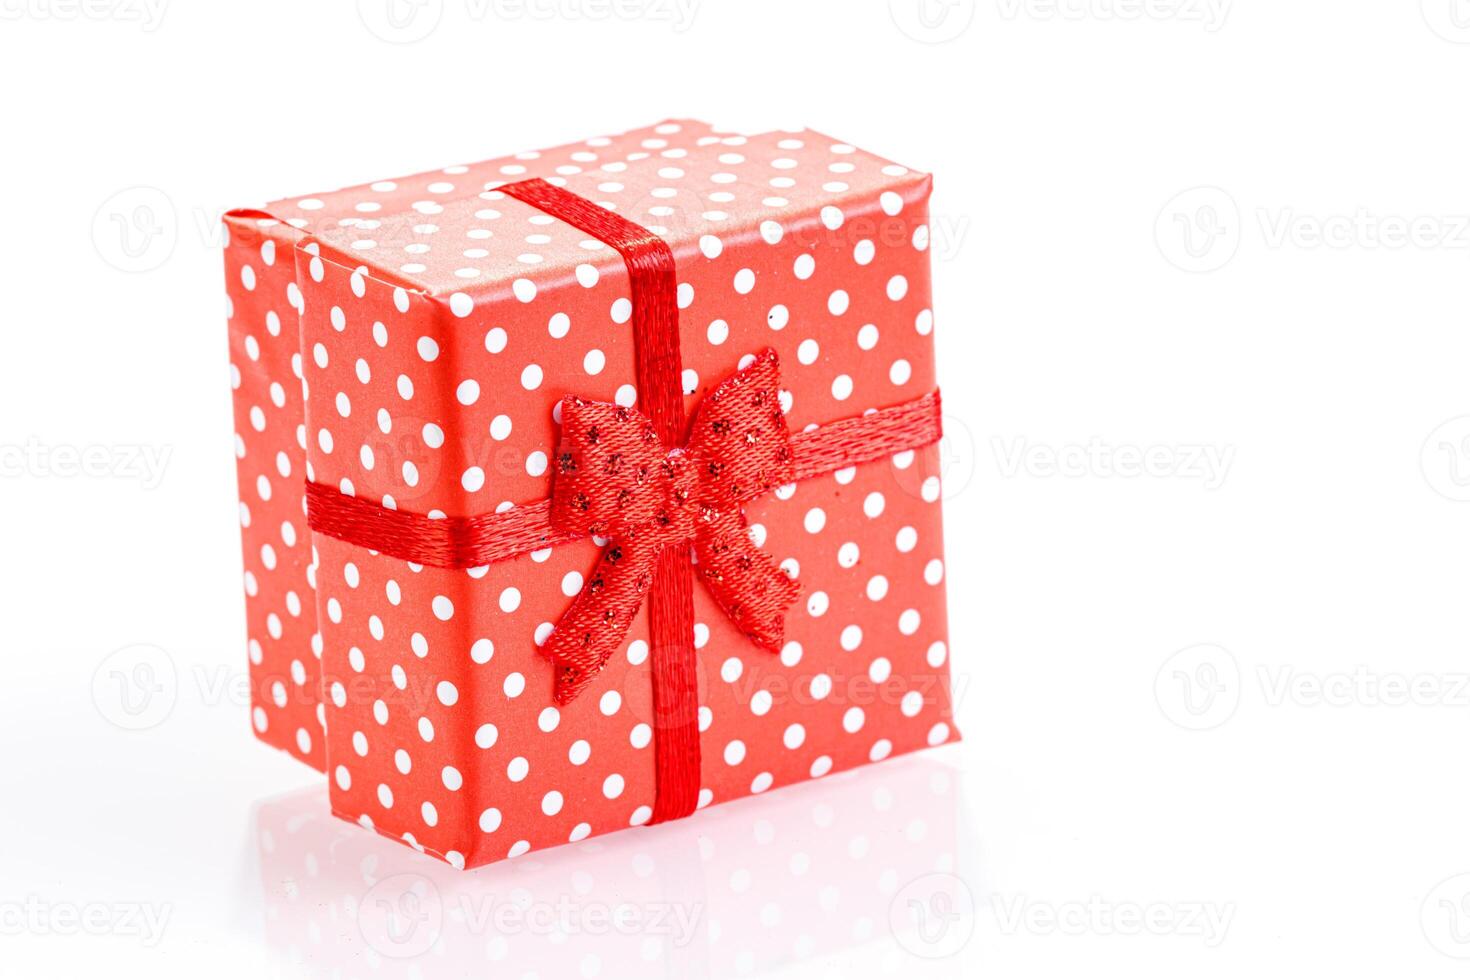 skön ny år röd gåva lådor på vit bakgrund foto